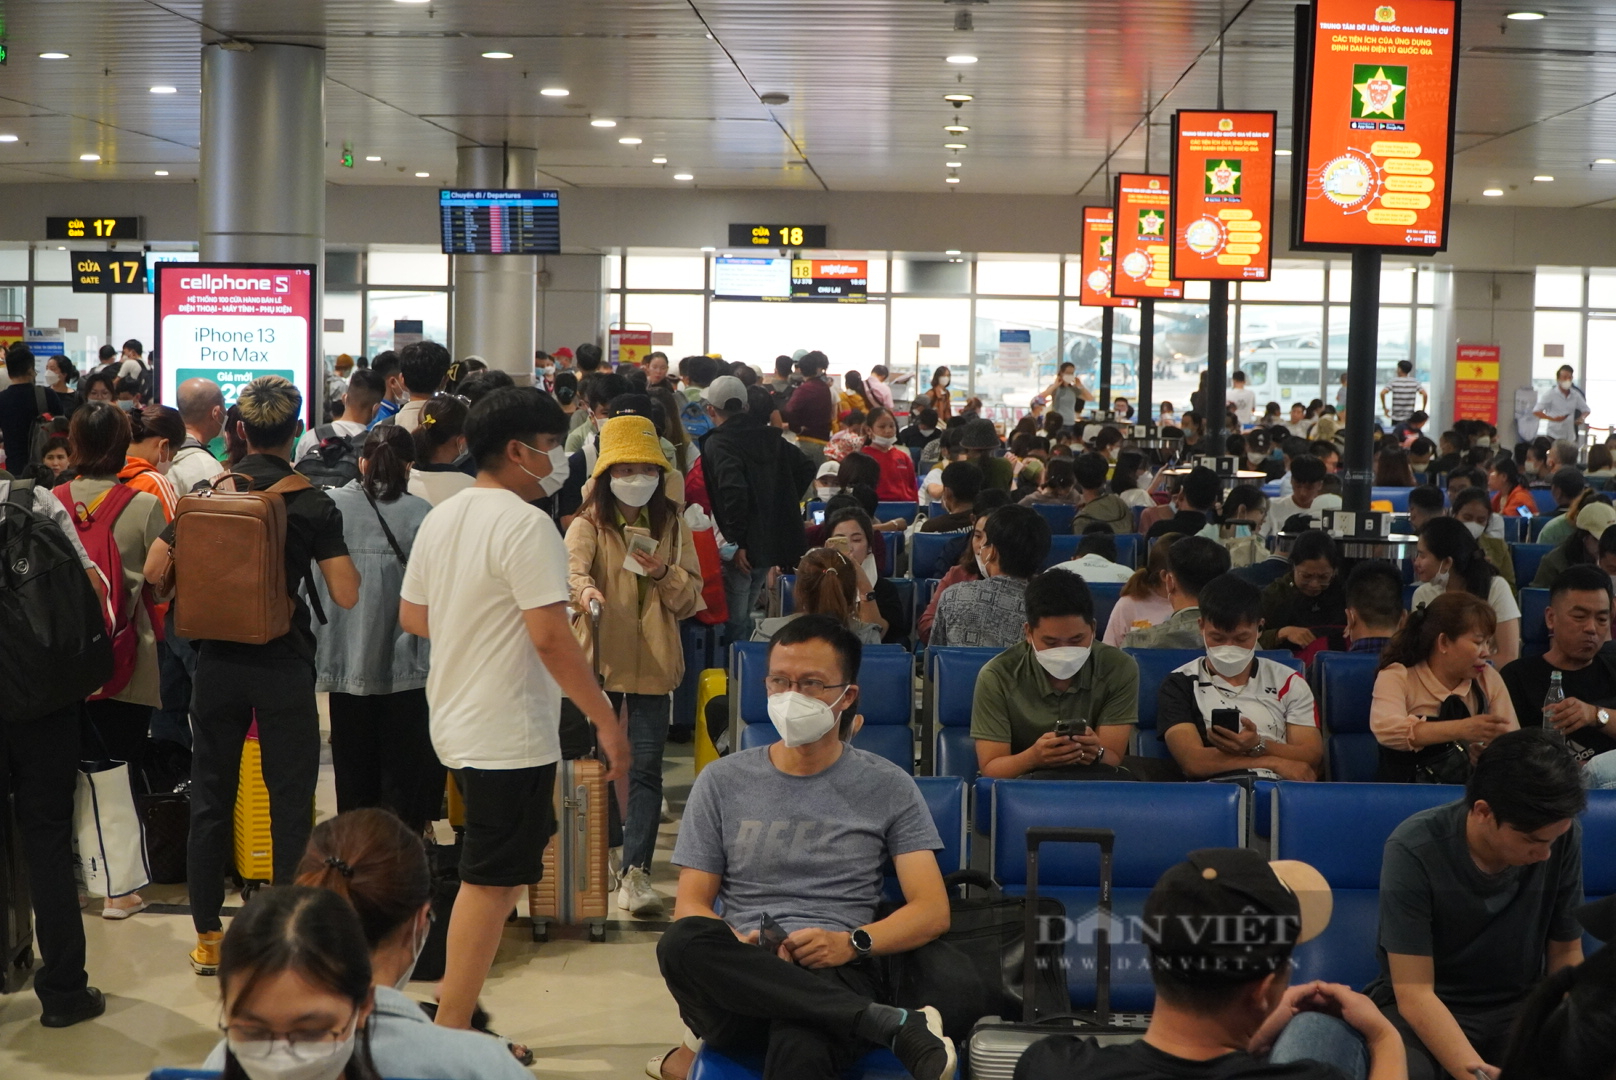 Ngày đầu sau kỳ nghỉ lễ, sân bay Tân Sơn Nhất vẫn chật ních người - Ảnh 3.